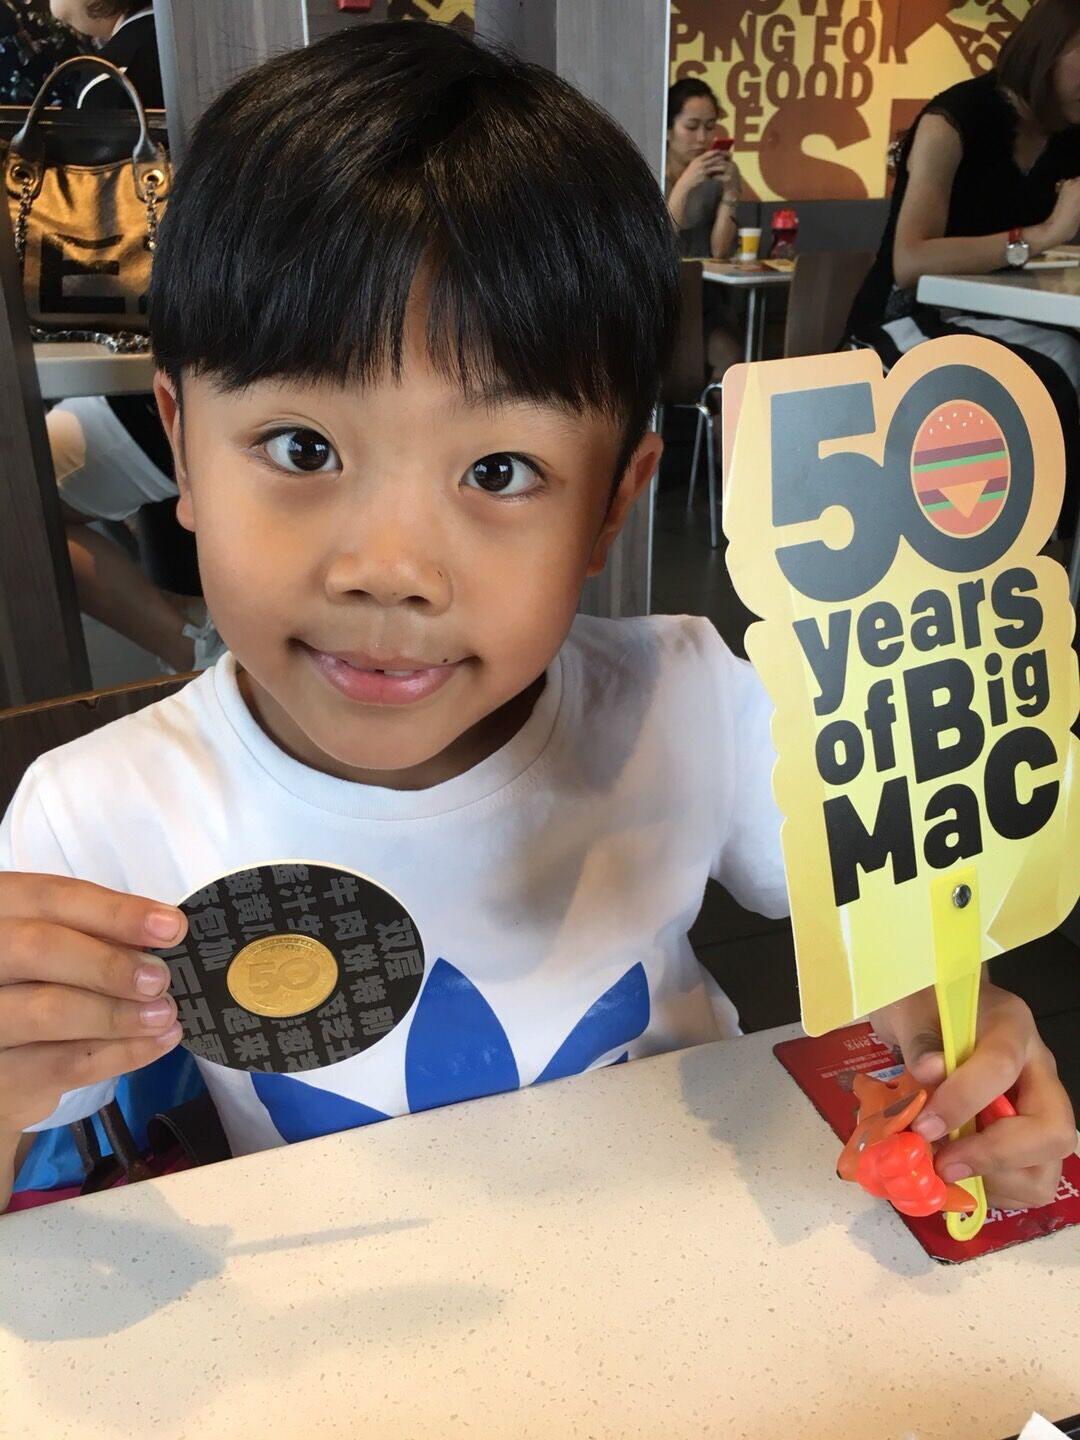 8月6日领到的麦当劳巨无霸50周年纪念币居然炒到了600块一枚